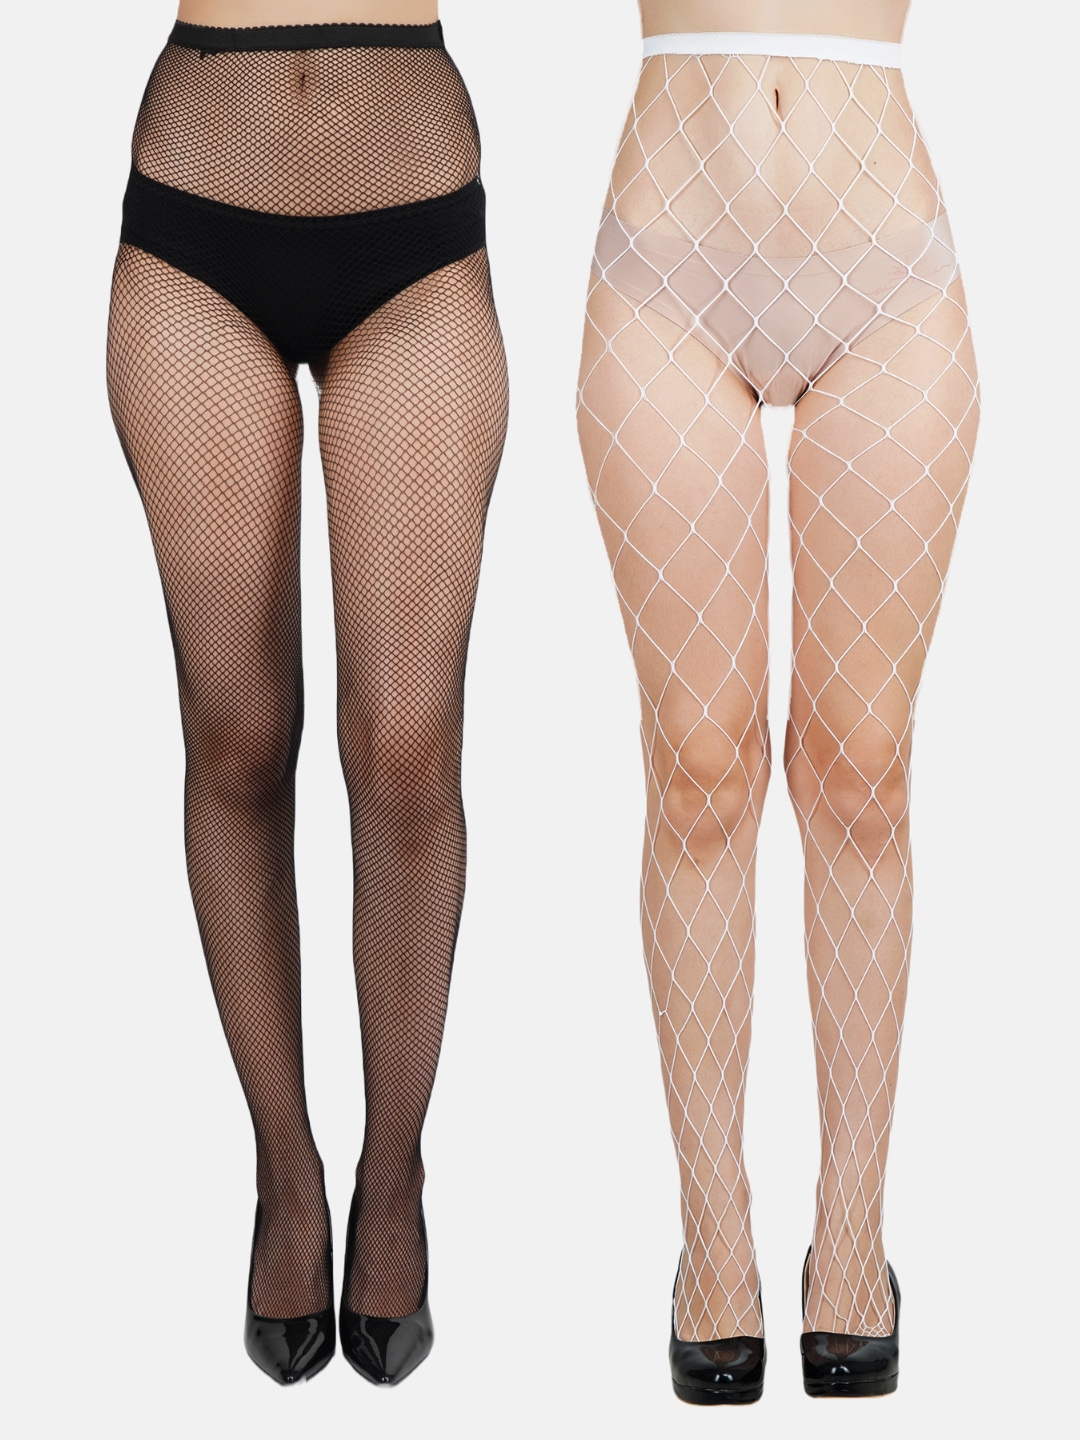 NEXT2SKIN Women's Nylon Waistband Pantyhose Stocking